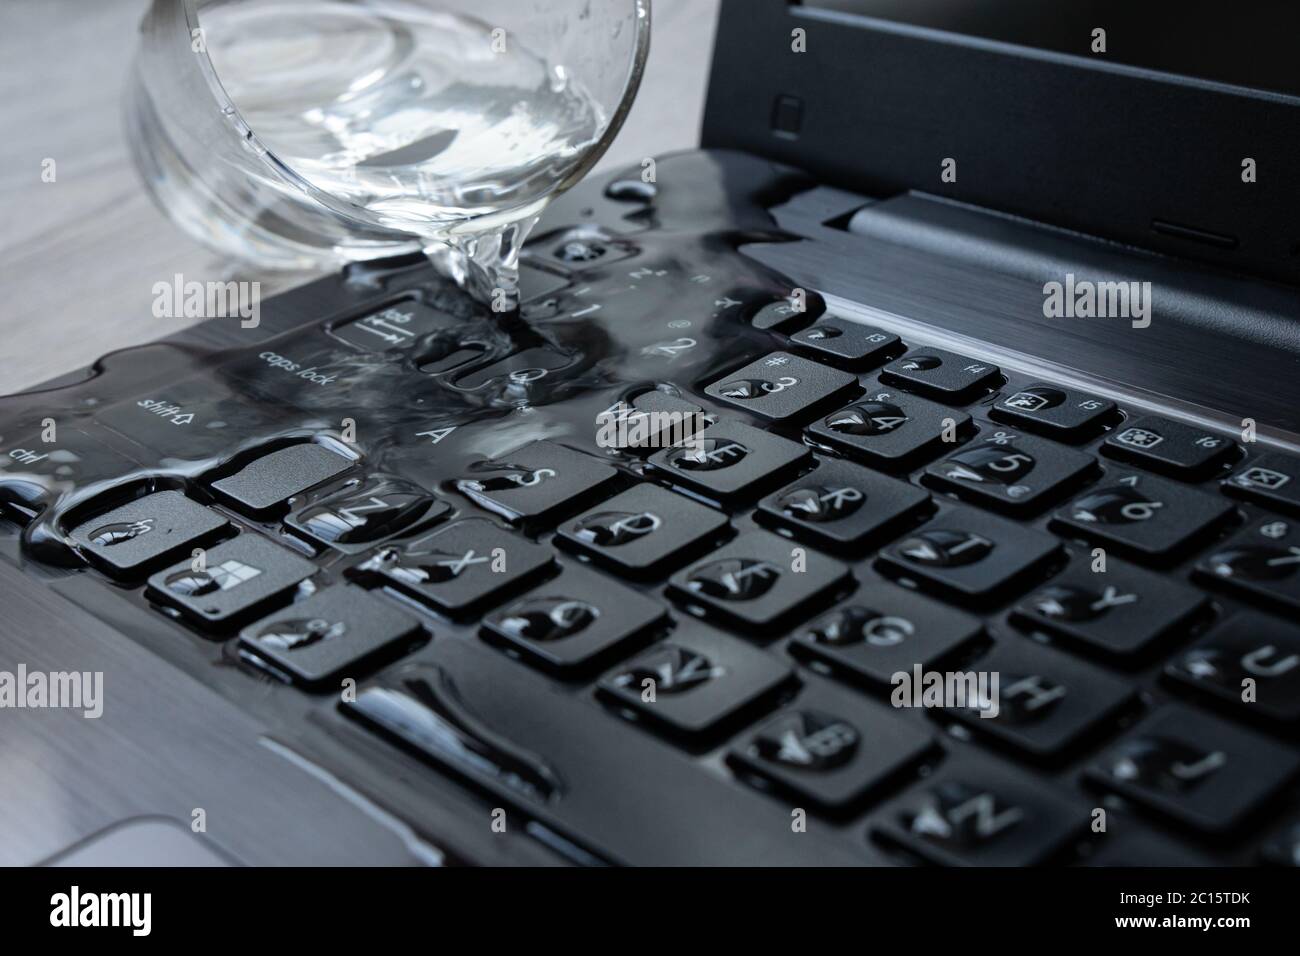 De l'eau s'est répandue sur un ordinateur portable par accident. Le clavier  est plein de liquide et l'ordinateur est en ruine Photo Stock - Alamy